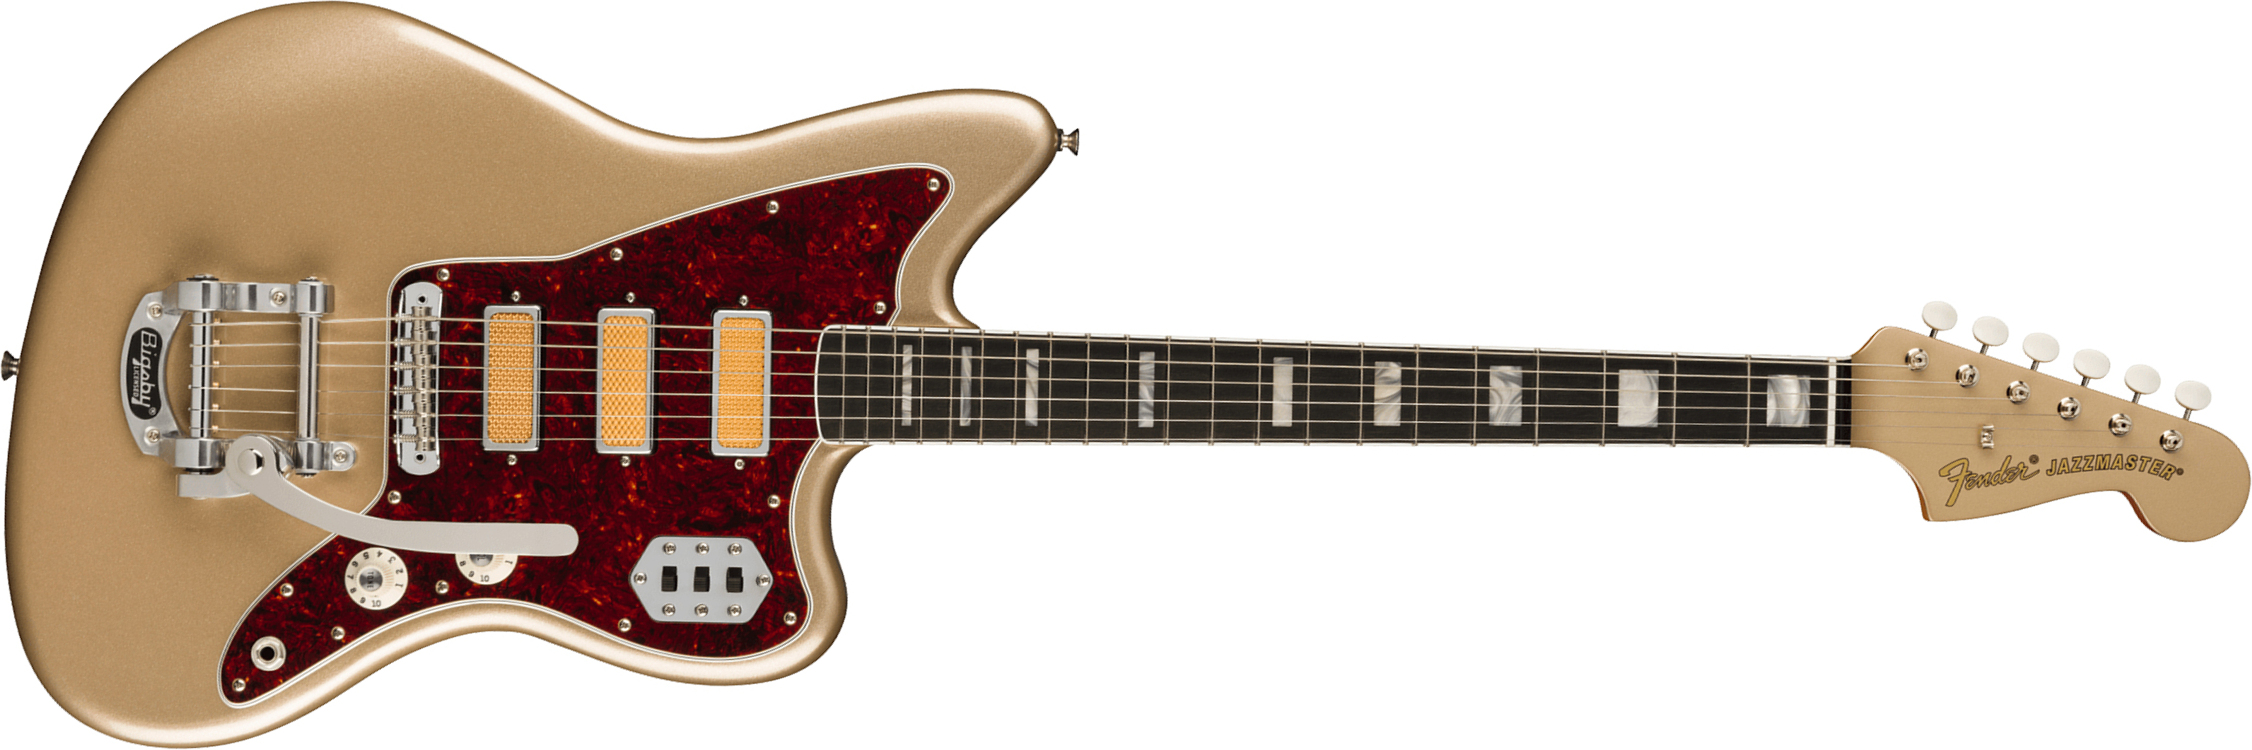 Fender Jazzmaster Gold Foil Ltd Mex 3mh Trem Bigsby Eb - Shoreline Gold - Guitare Électrique RÉtro Rock - Main picture